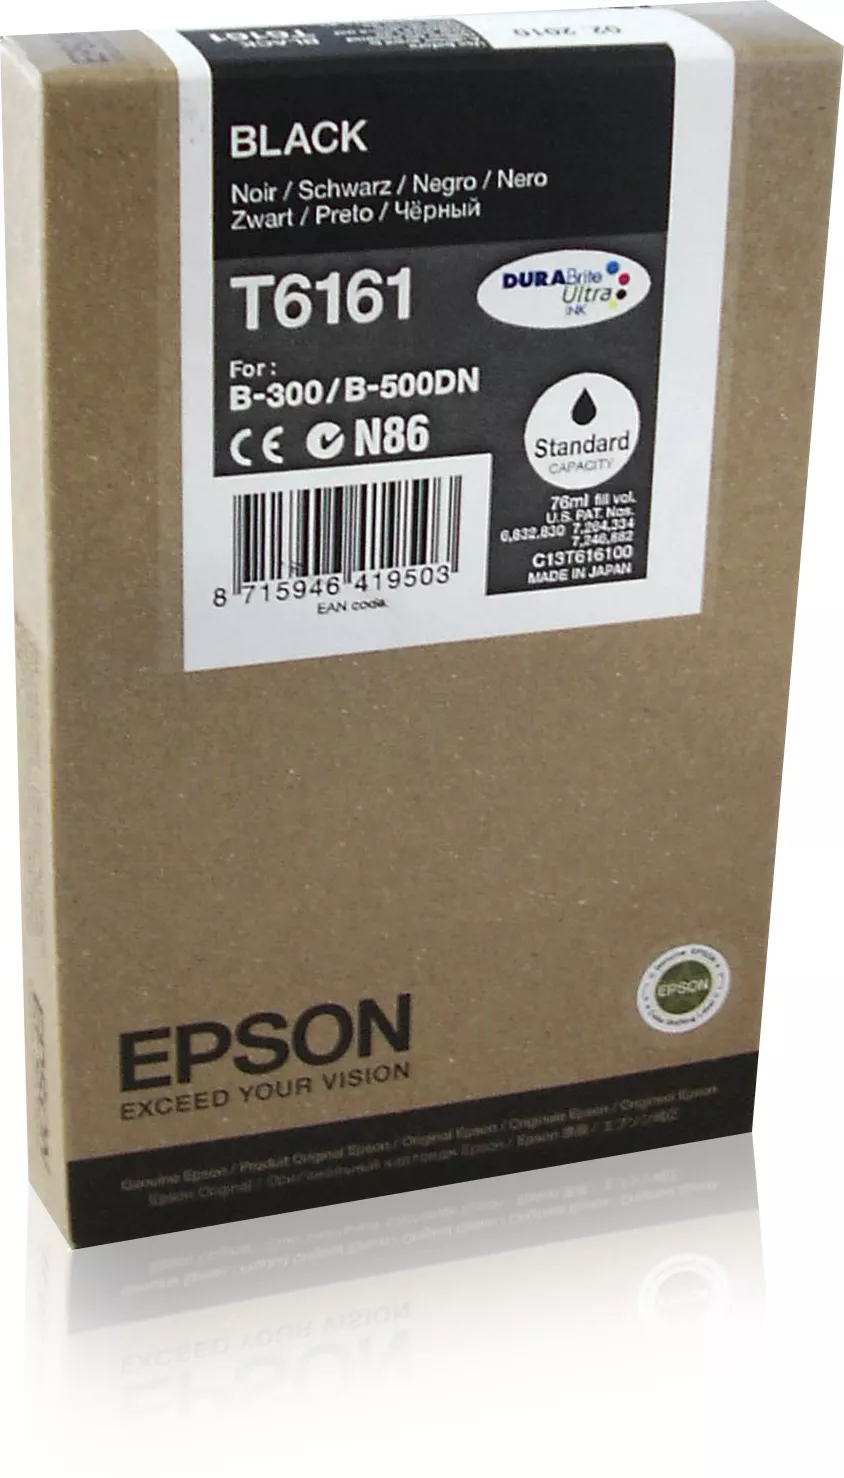 Achat EPSON T6161 cartouche de encre noir capacité standard 76ml au meilleur prix